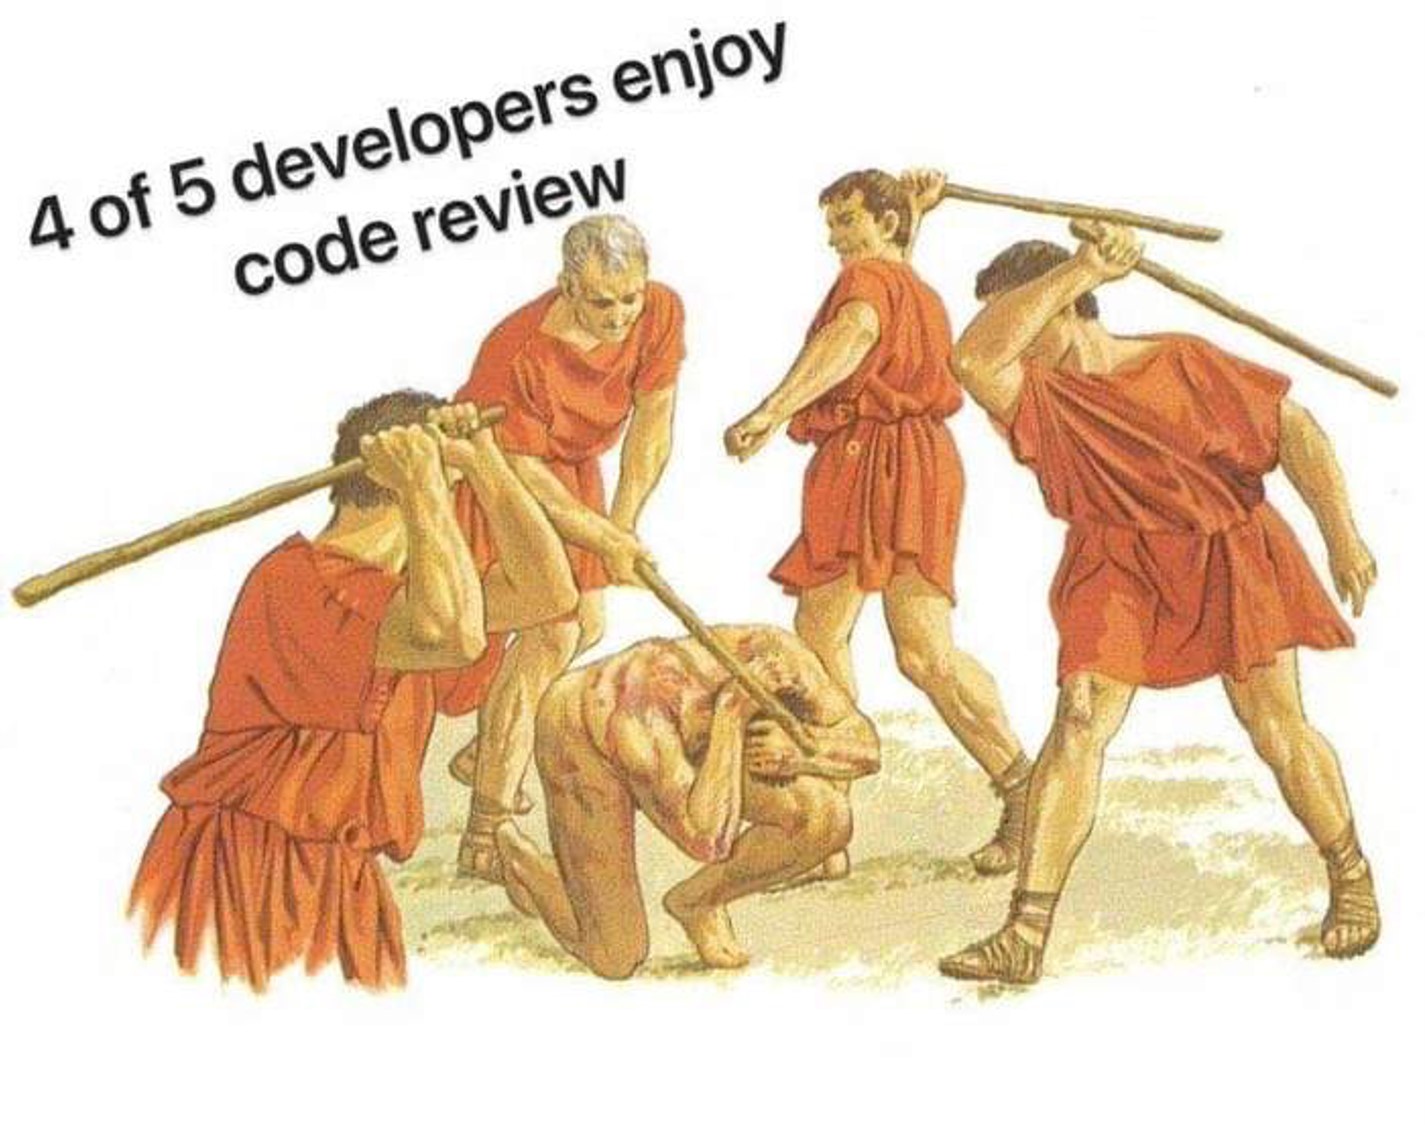 Code review — это процесс проверки кода, поиска ошибок в нем и способов их исправления